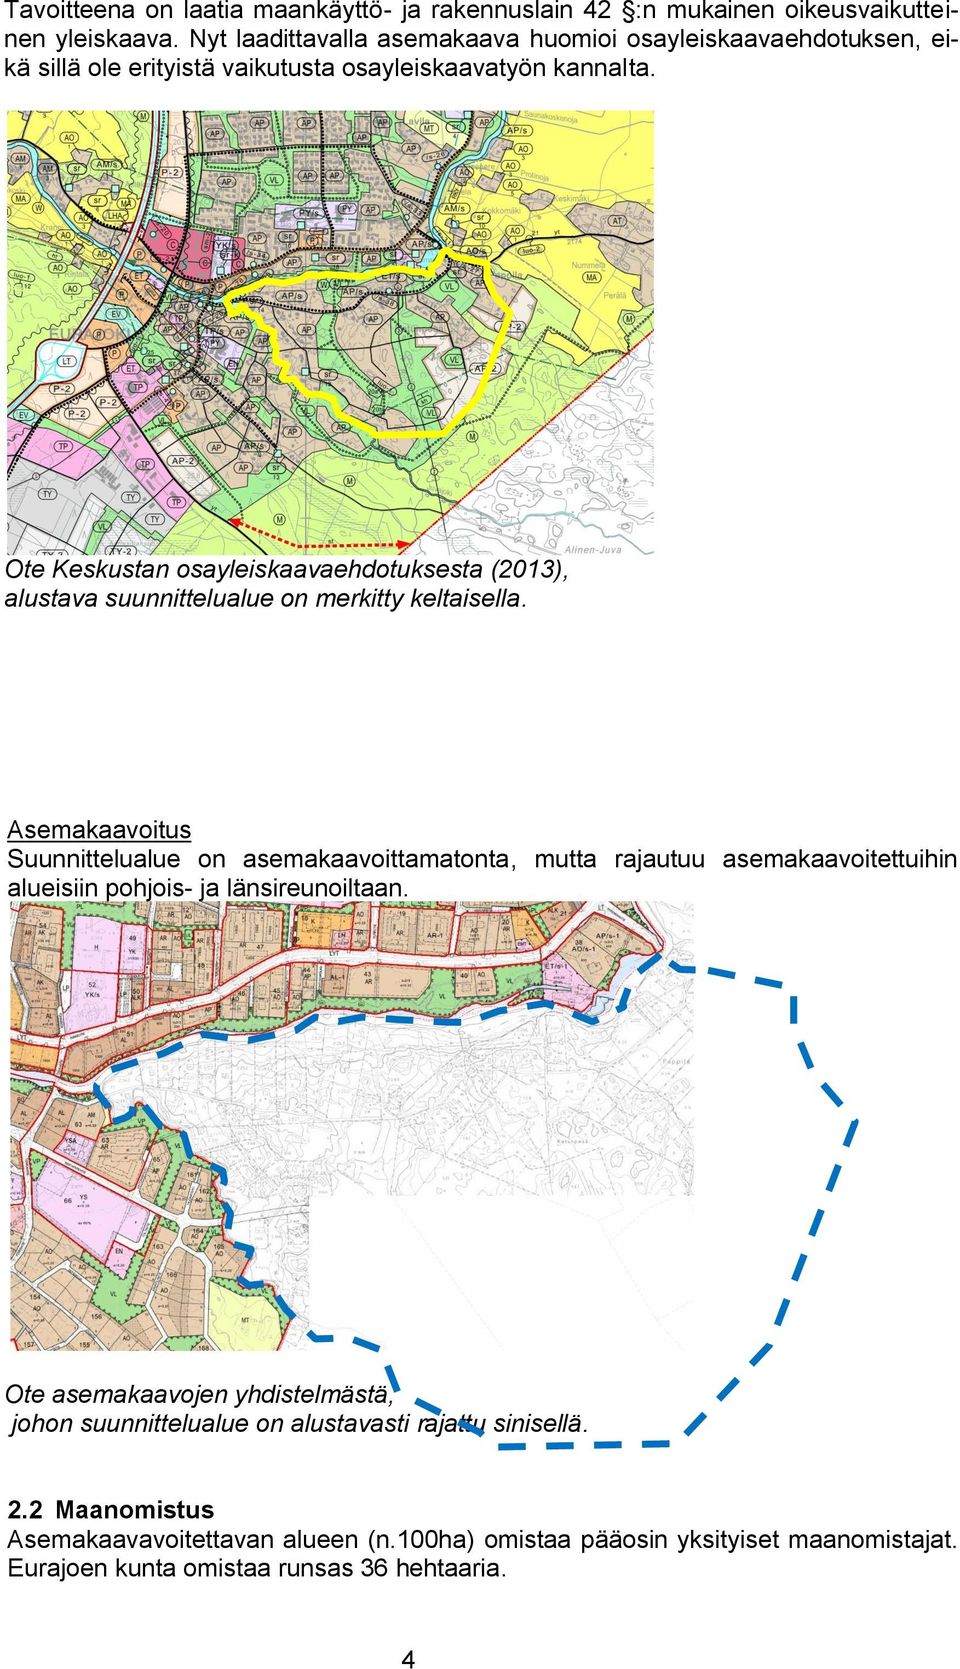 Ote Keskustan osayleiskaavaehdotuksesta (2013), alustava suunnittelualue on merkitty keltaisella.